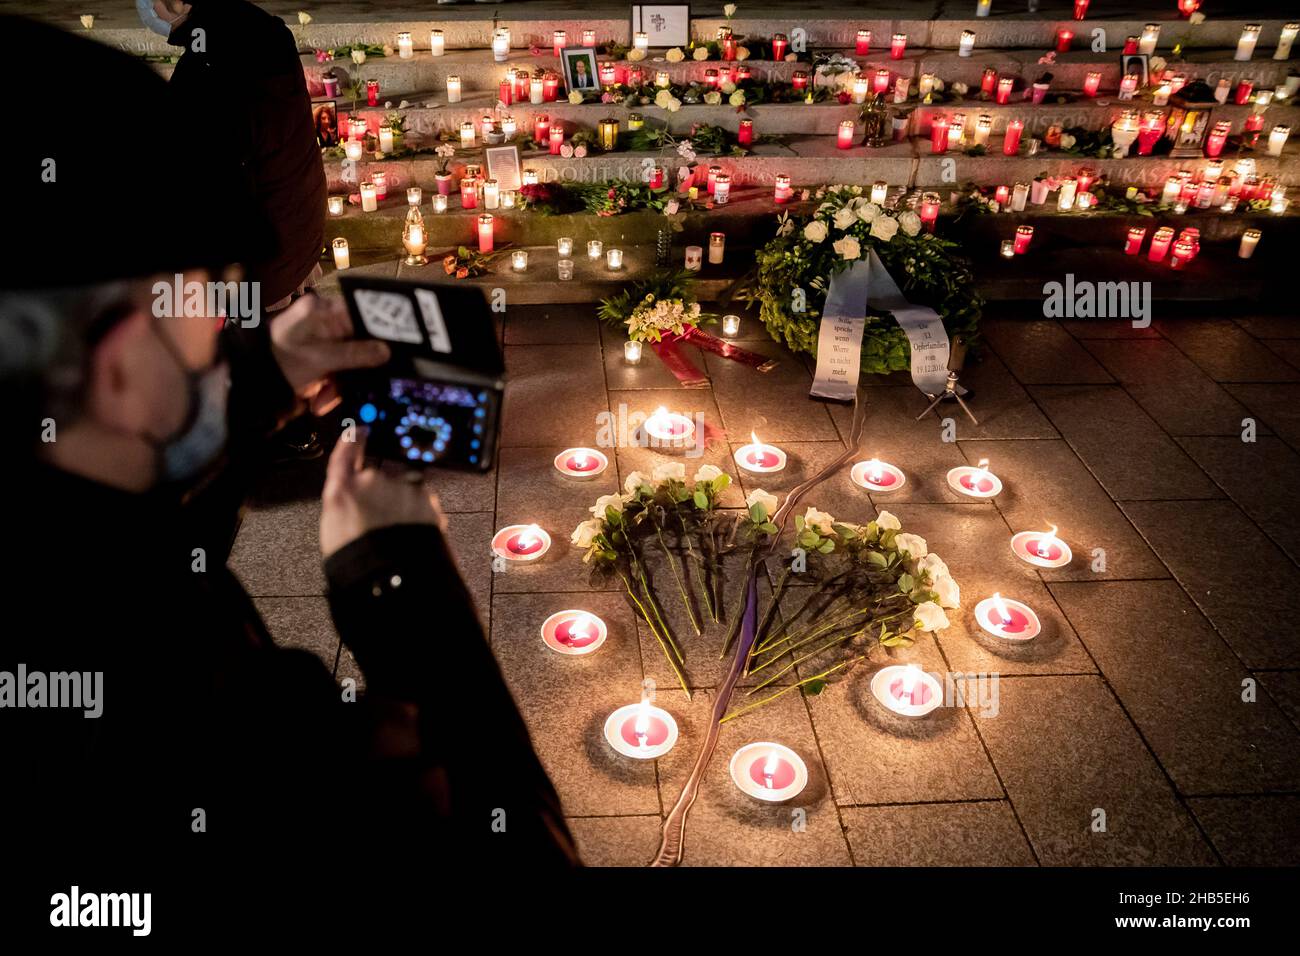 CLASSÉ - 19 décembre 2020, Berlin: Un homme prend une photo du mémorial du 'Golden Rift', où de nombreuses bougies ont été posées, y compris des bougies et des roses blanches en forme de coeur, pendant le service commémoratif du quatrième anniversaire de l'attaque islamiste sur le marché de Noël de Breitscheidplatz.Le président allemand Steinmeier, le président du Bundestag Bas (SPD) et le maire de Berlin Müller (SPD) sont attendus dimanche soir pour le cinquième anniversaire de l'attentat.Steinmeier et Müller prononceront de brefs discours lors d'un service de l'Eglise du souvenir; le sermon sera donné par Protstan Banque D'Images